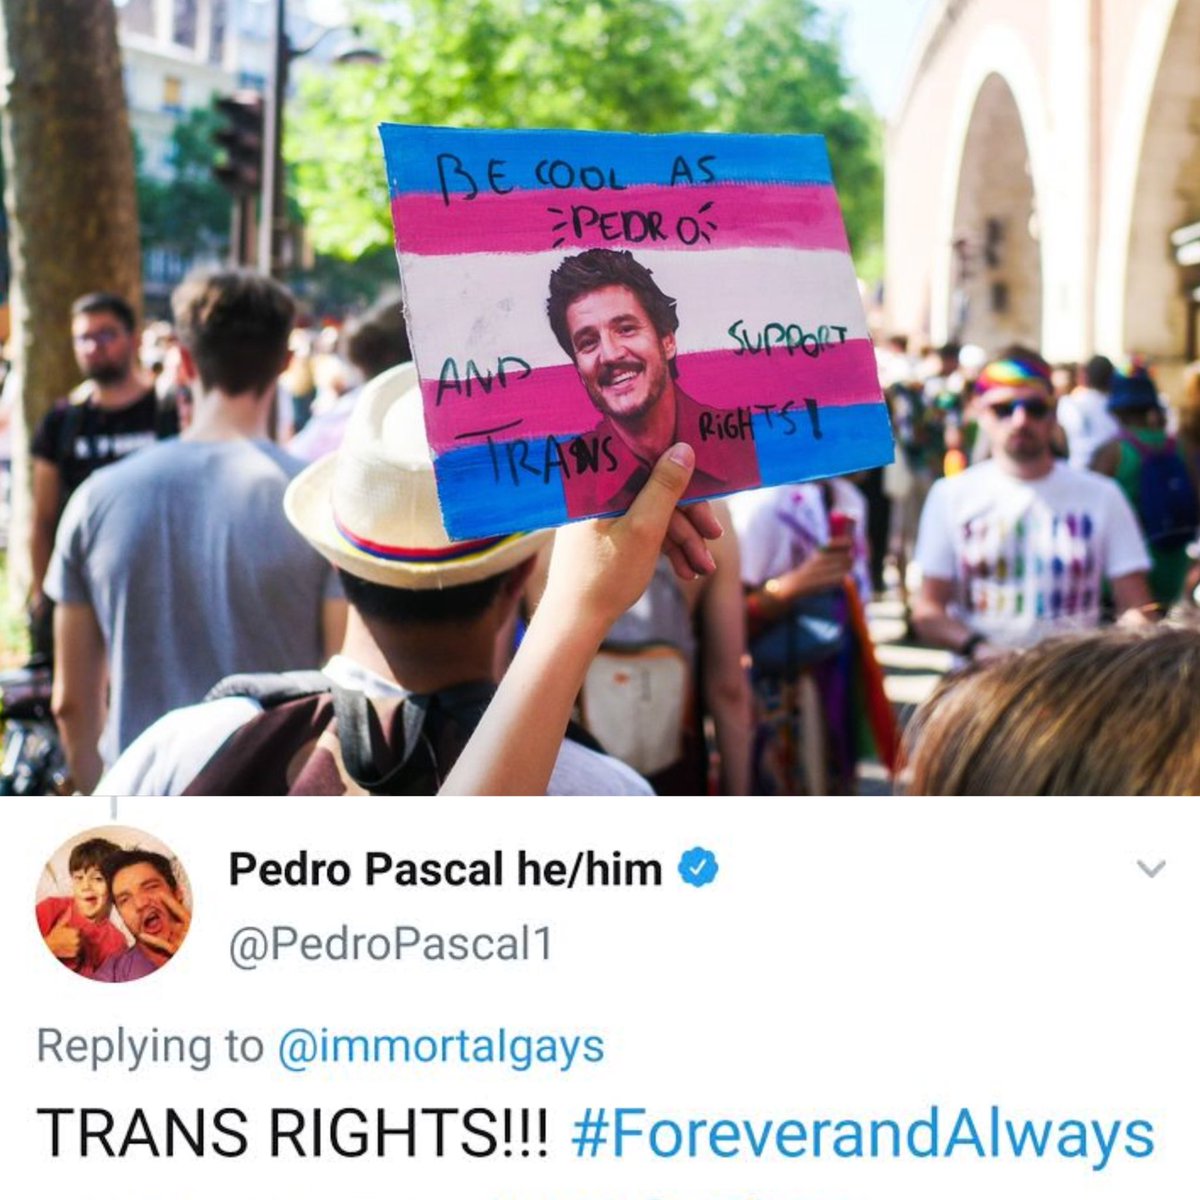 Não podia faltar! 
Pedro Pascal foi relembrado nas paradas LGBTQIA+ que aconteceram pelo mundo nesse domingo.

'Seja tão legal quanto o Pedro e apoie os direitos de pessoas trans', escreveu um fã. E temos a paz da certeza de que ele está do nosso lado, #ForeverandAlways. 🏳️‍⚧️🏳️‍🌈